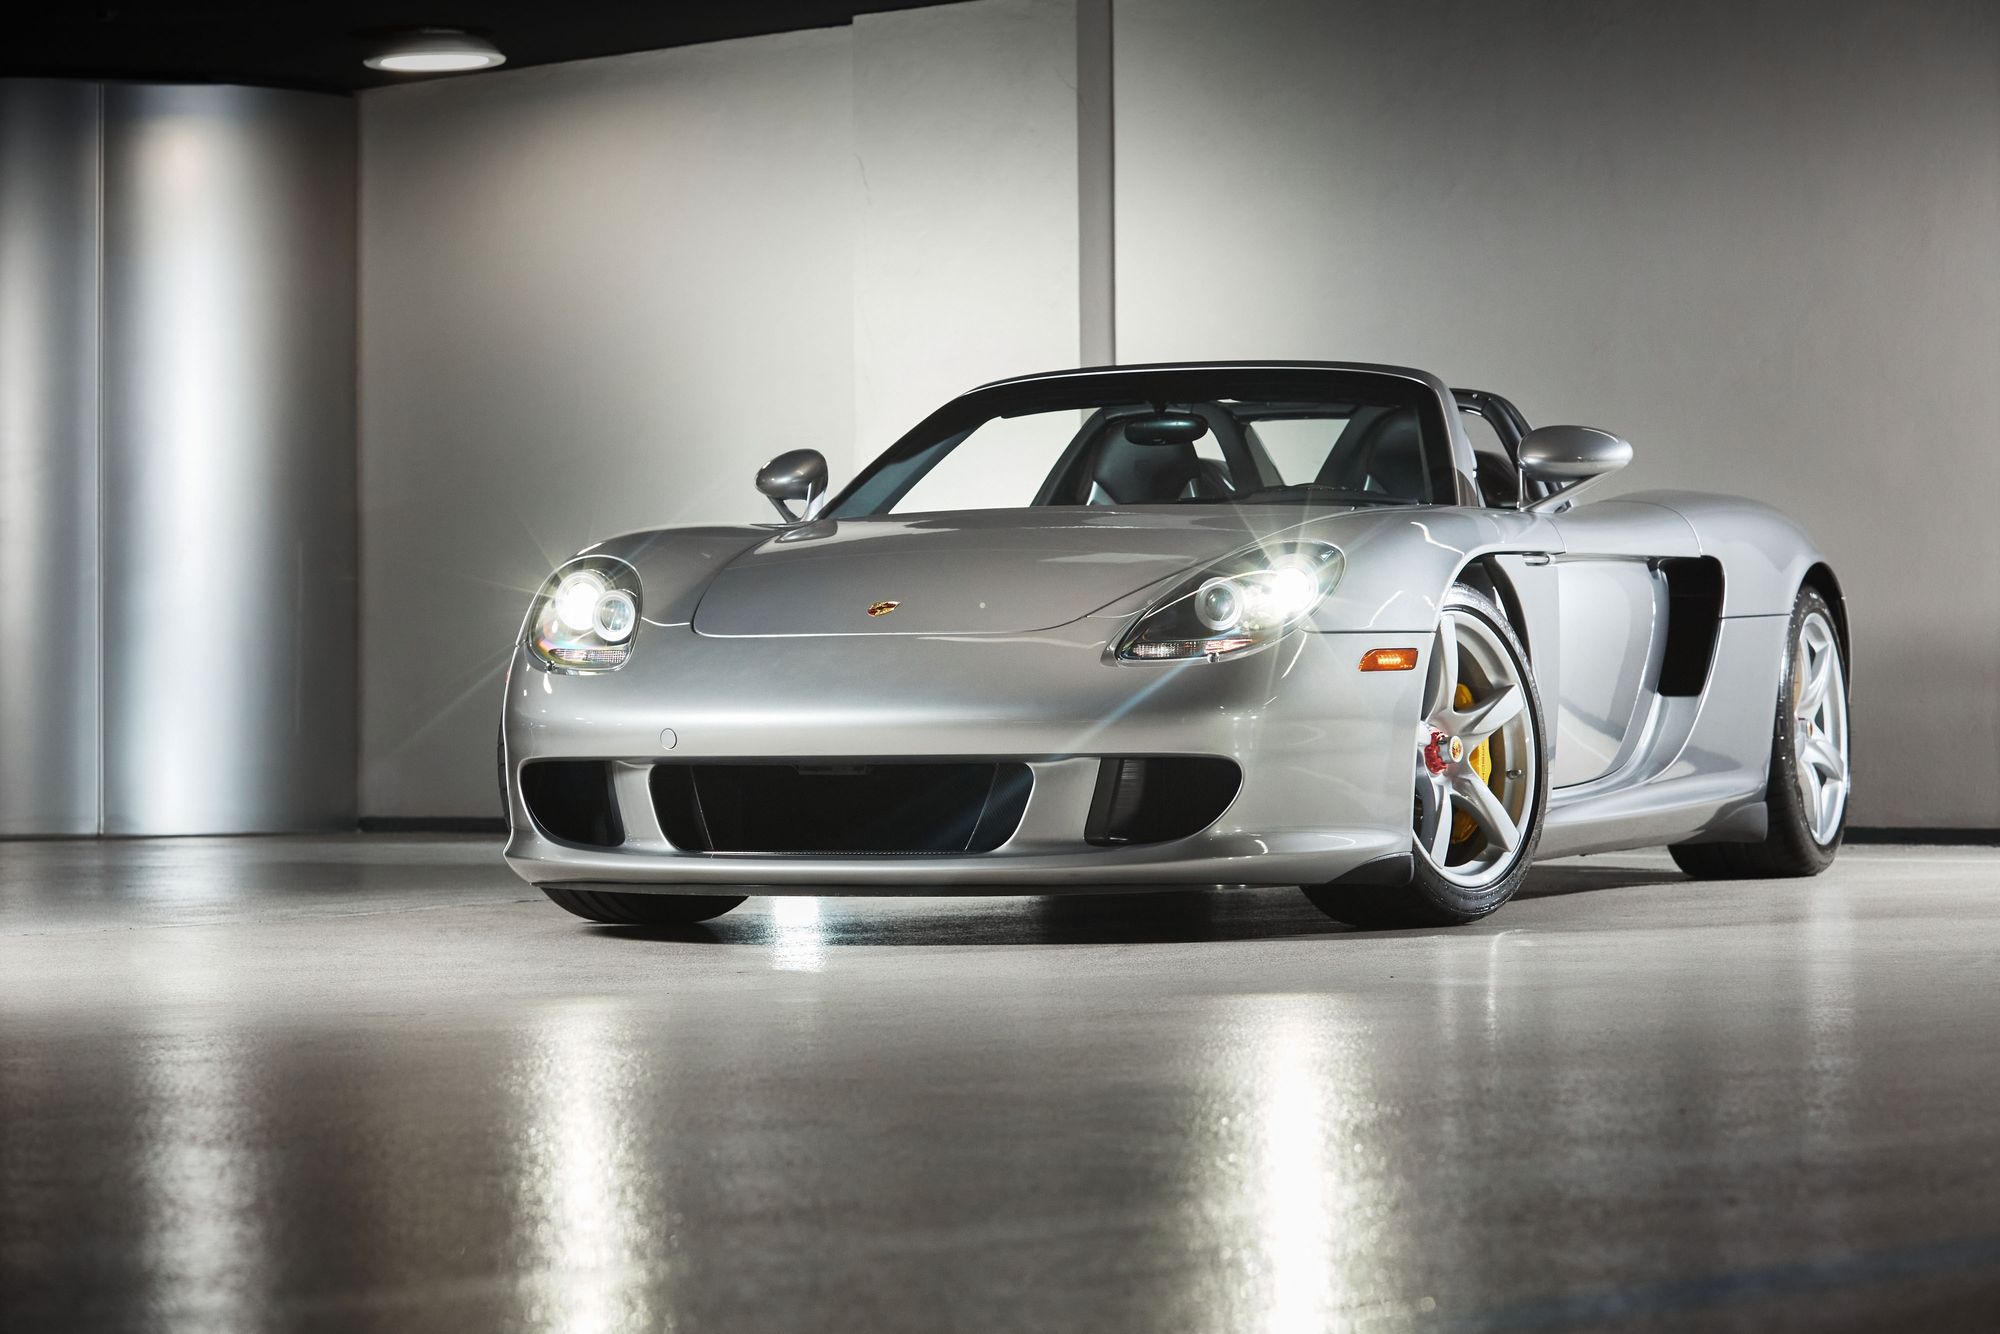 2005 Porsche Carrera GT Stuns Onlookers